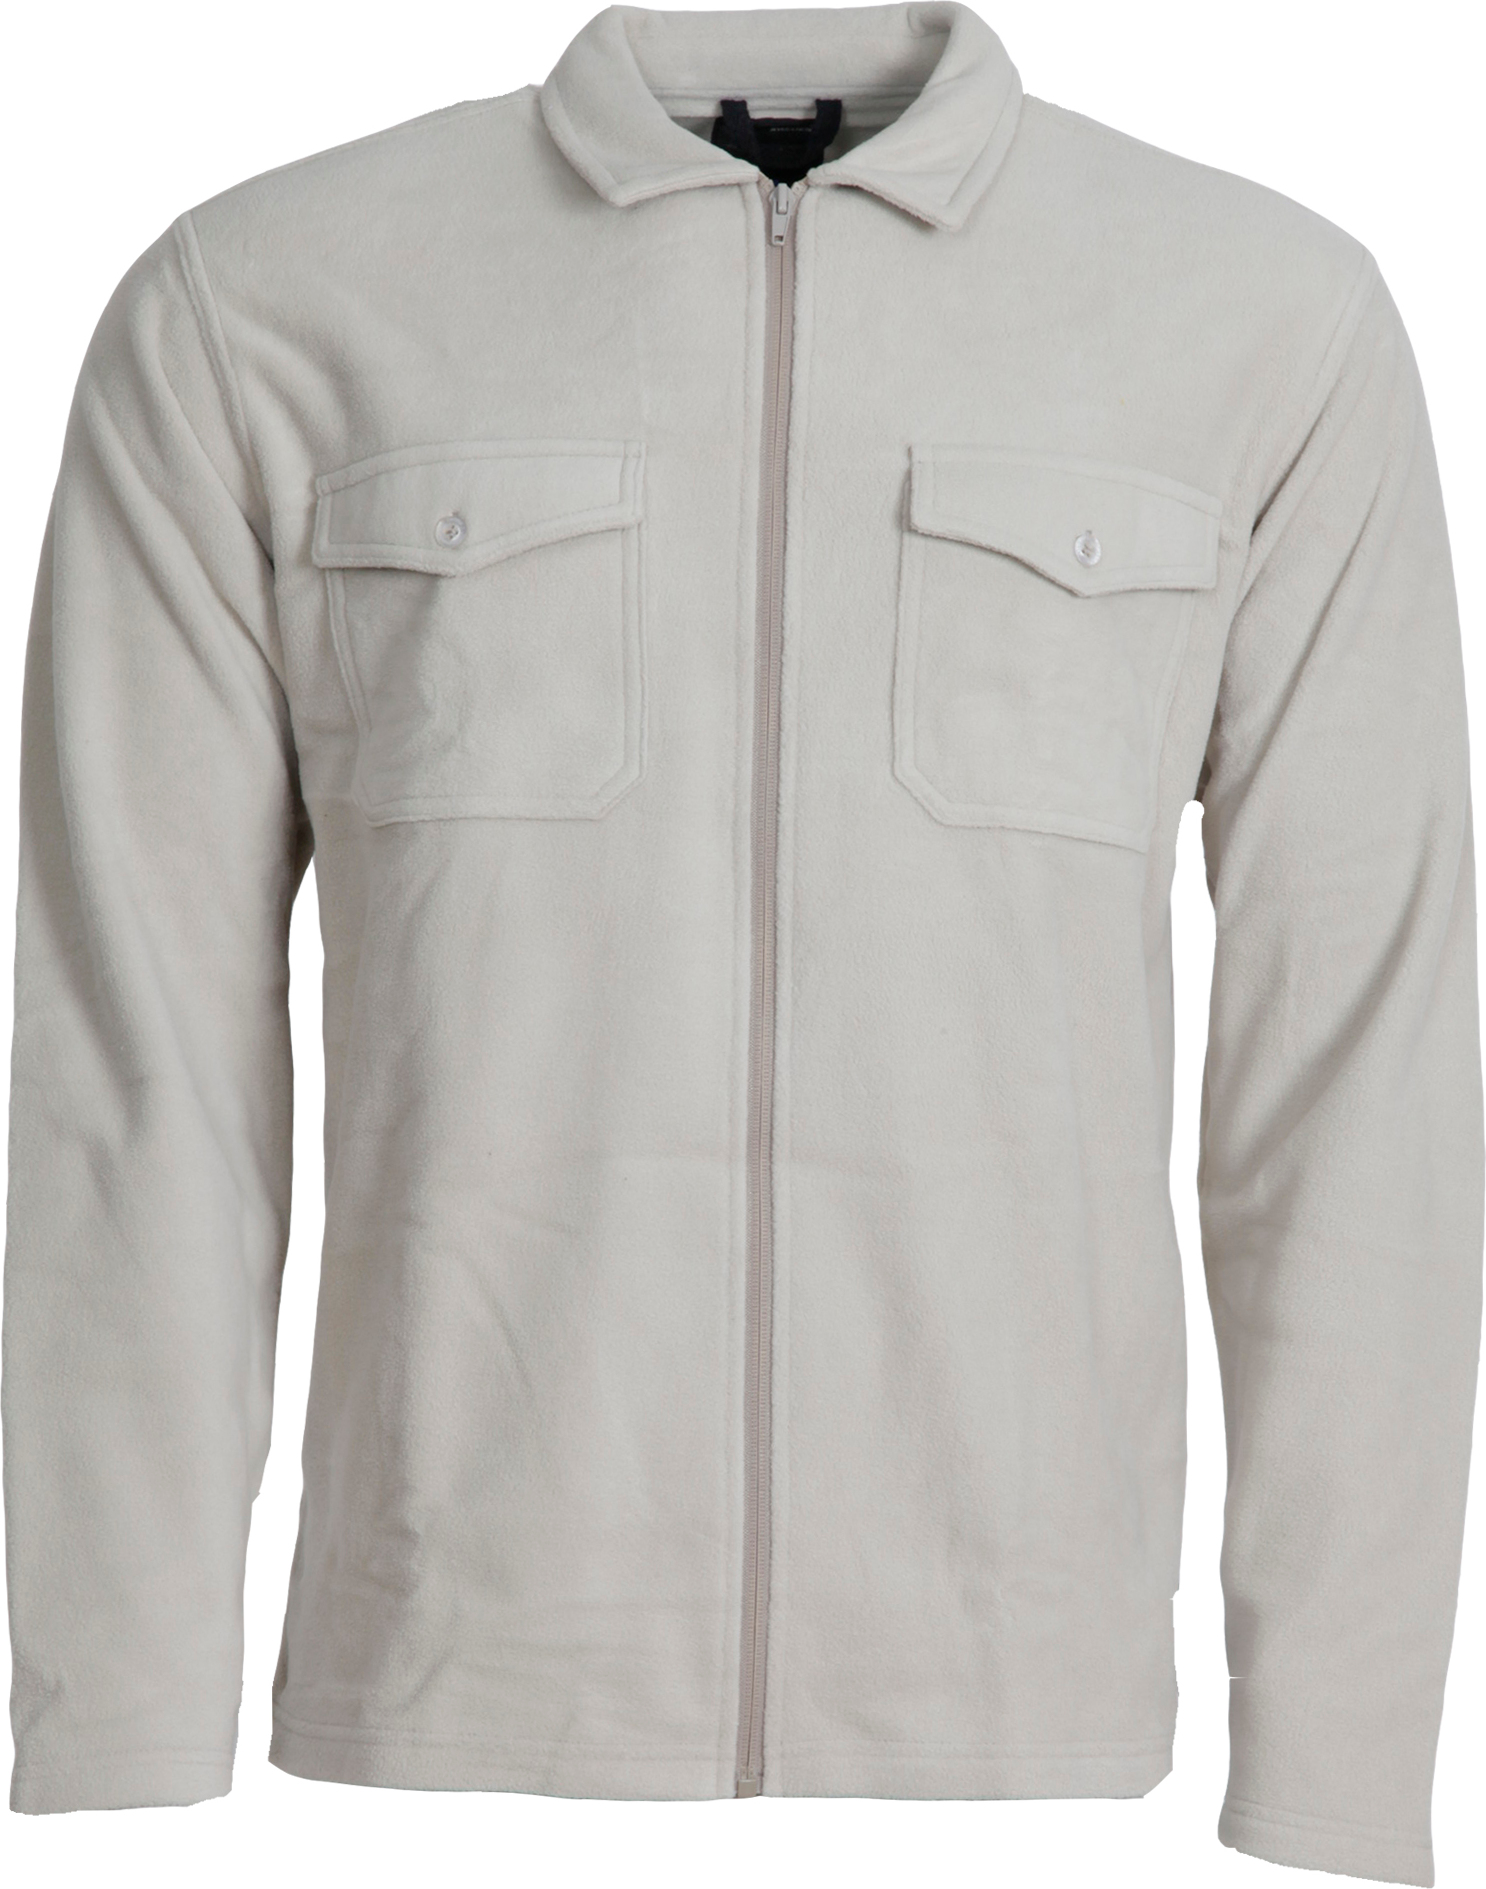 Men's Pescara Fleece Shirt Khaki